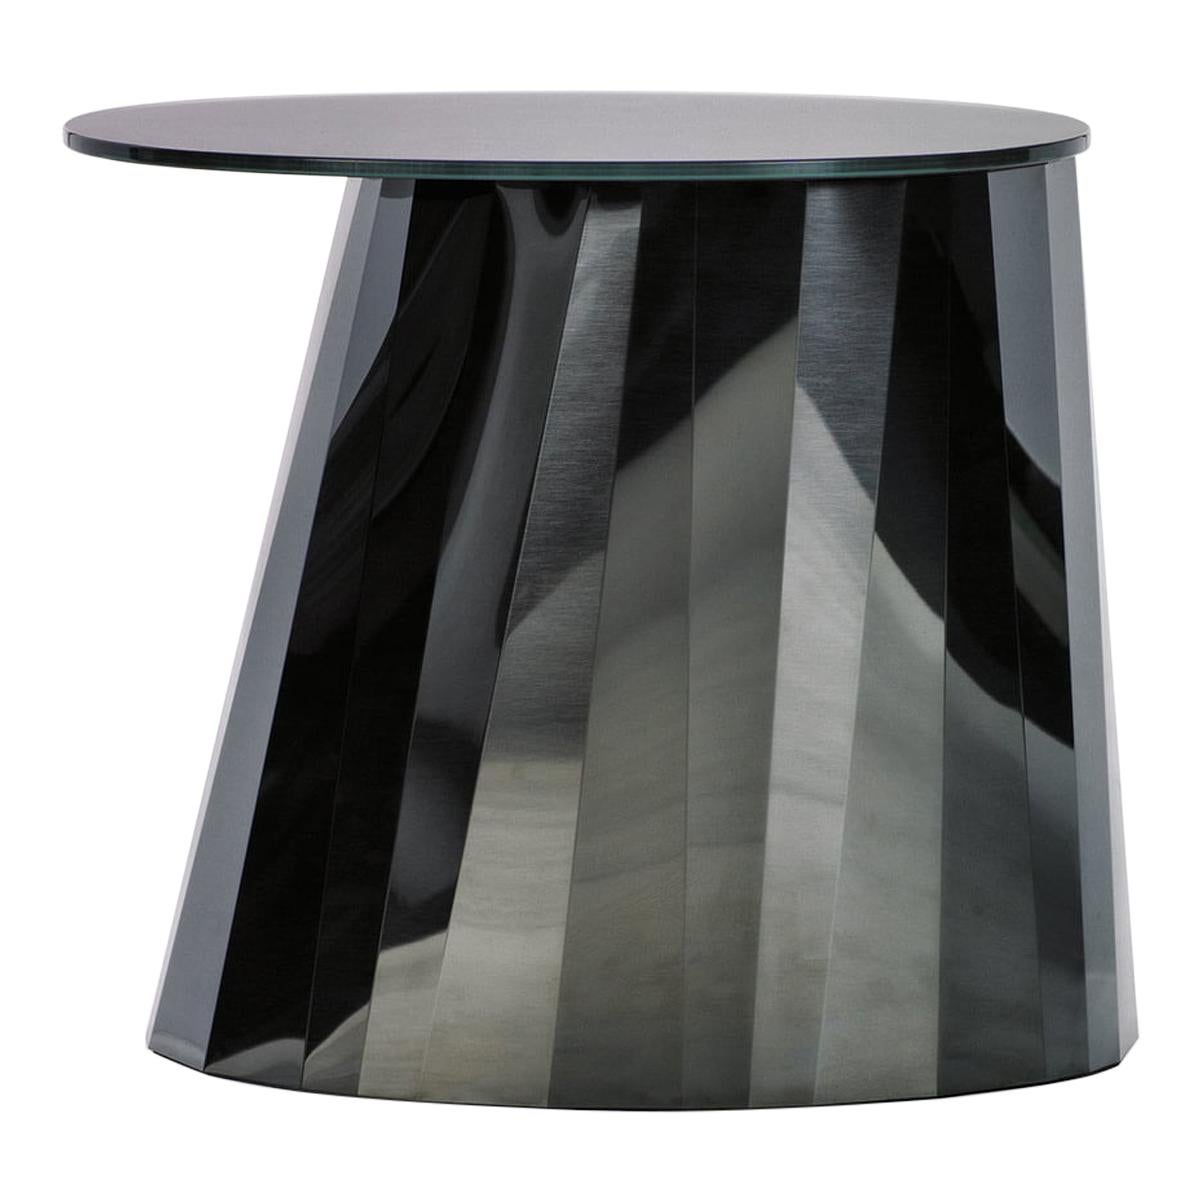 ClassiCon Onyx Black Pli Table Designed by Victoria Wilmotte